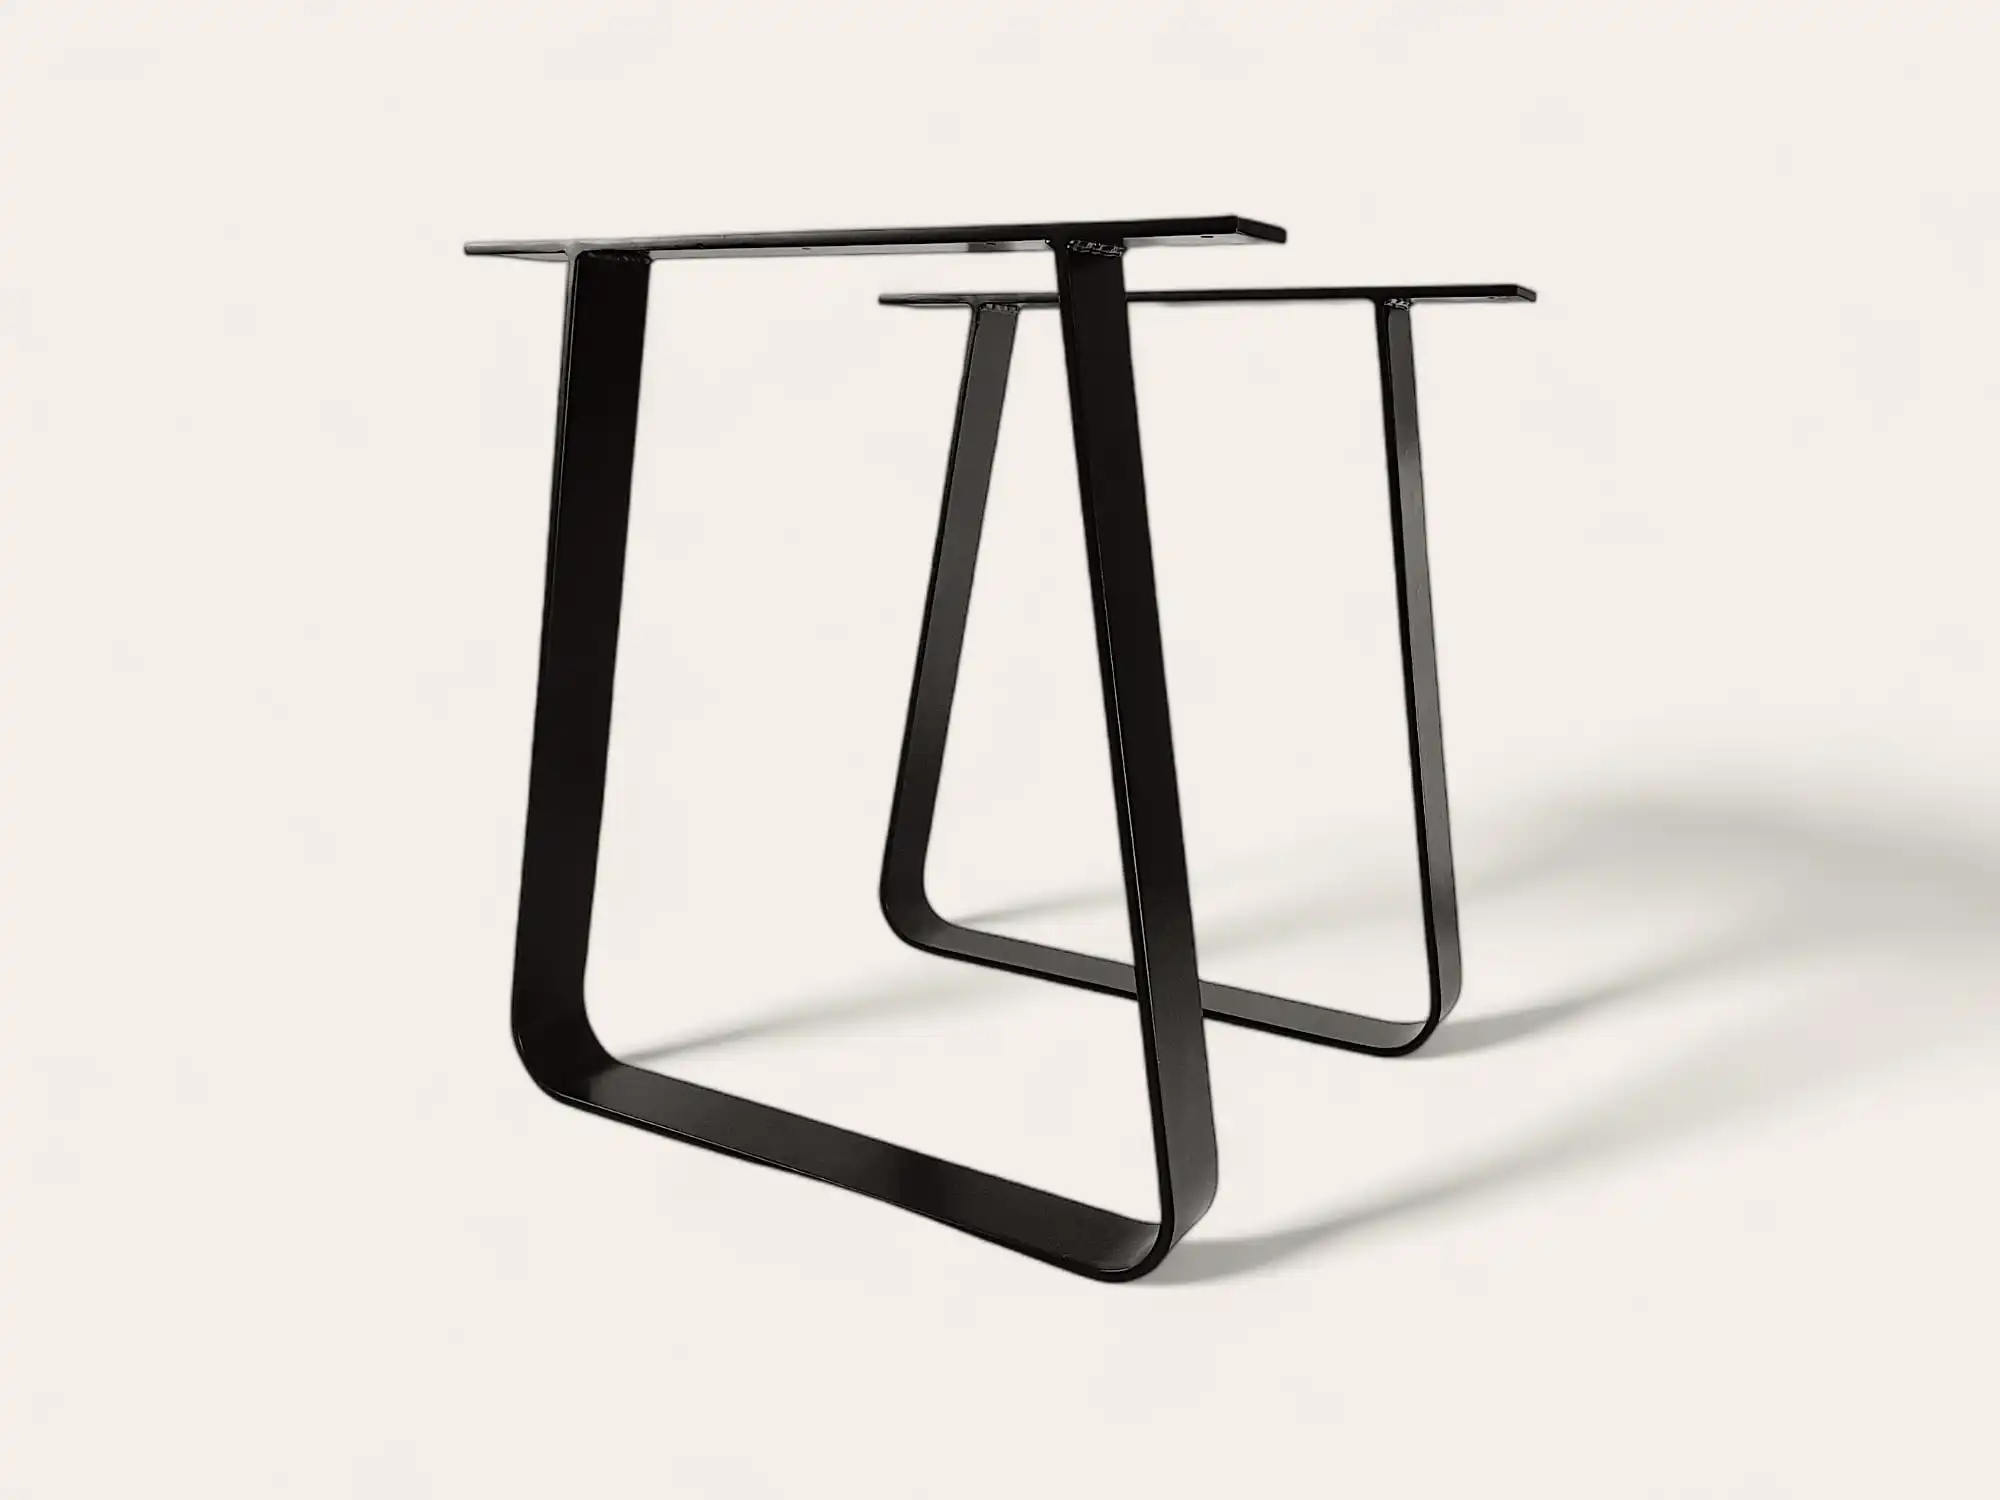 Pieds de table en métal noir au design minimaliste sur fond blanc.